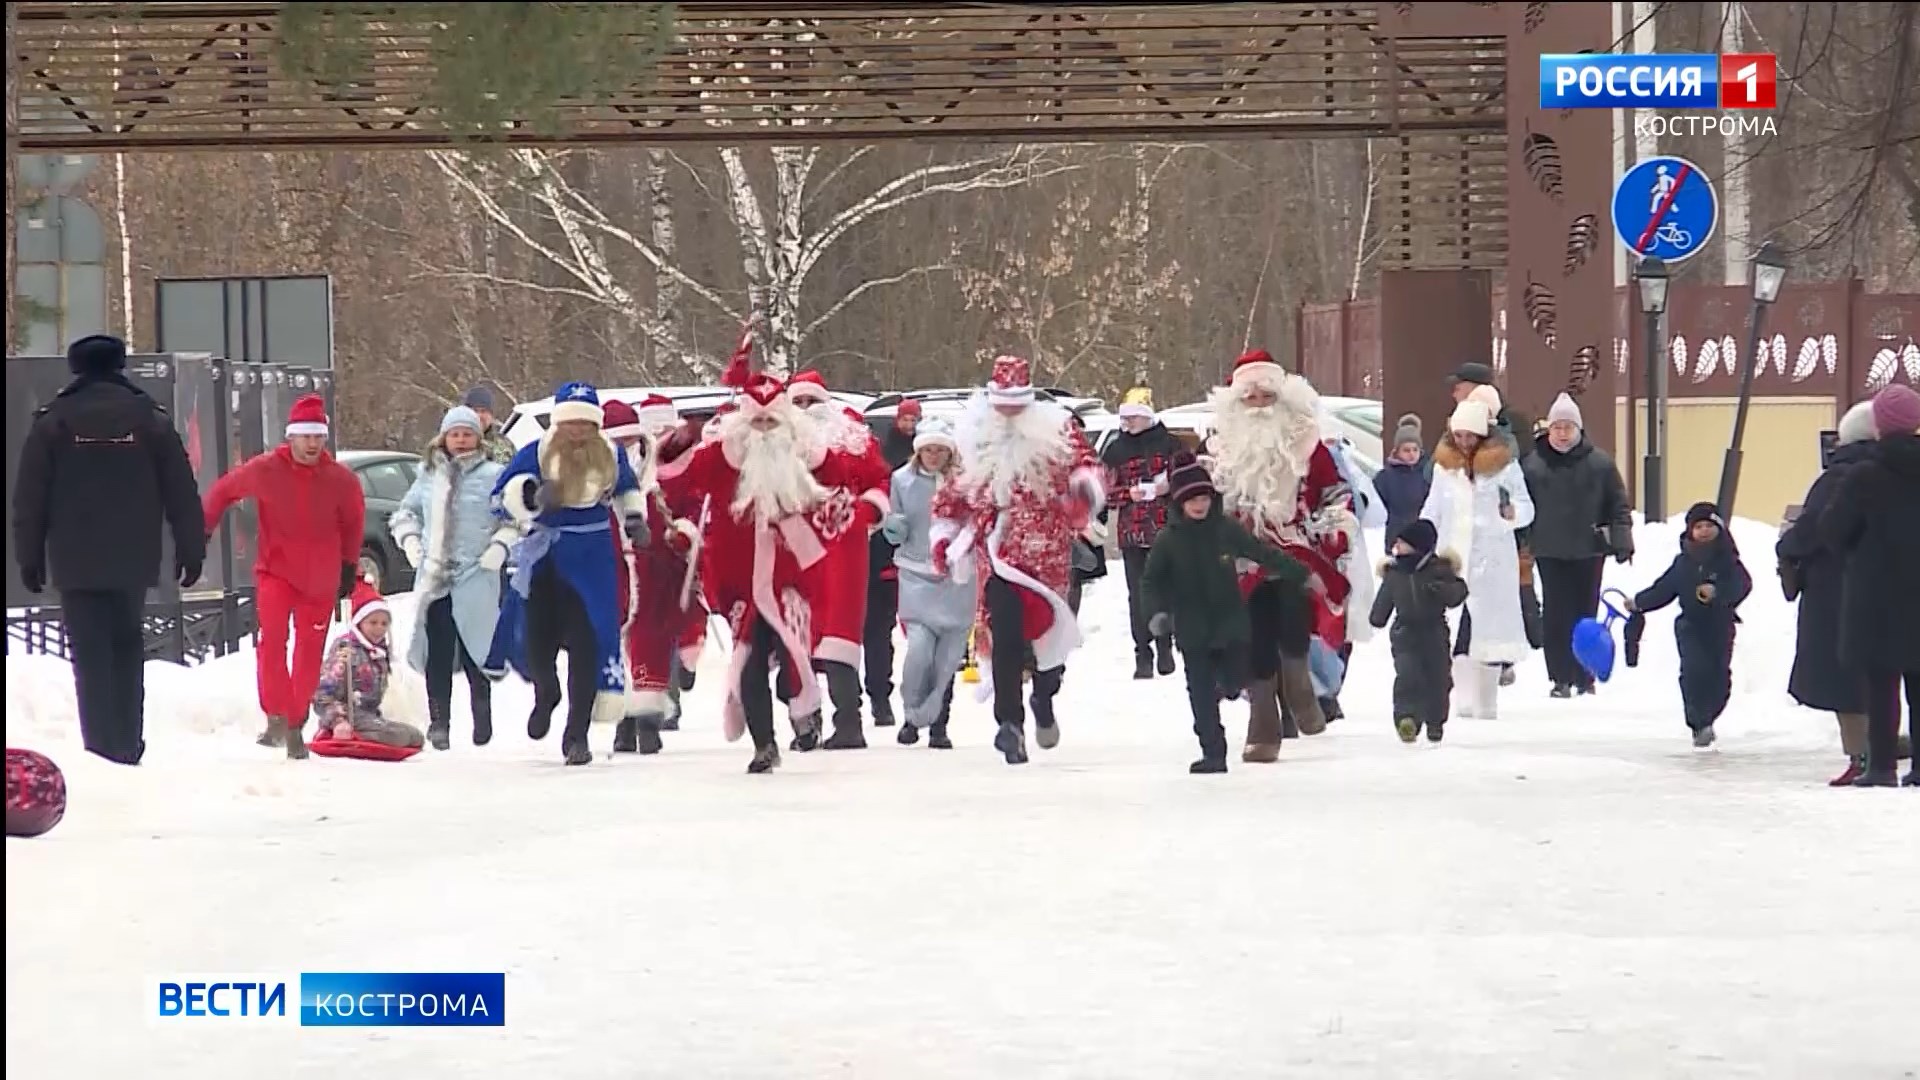 Сказочный забег Дедов Морозов и Снегурочек состоится в Костроме в субботу